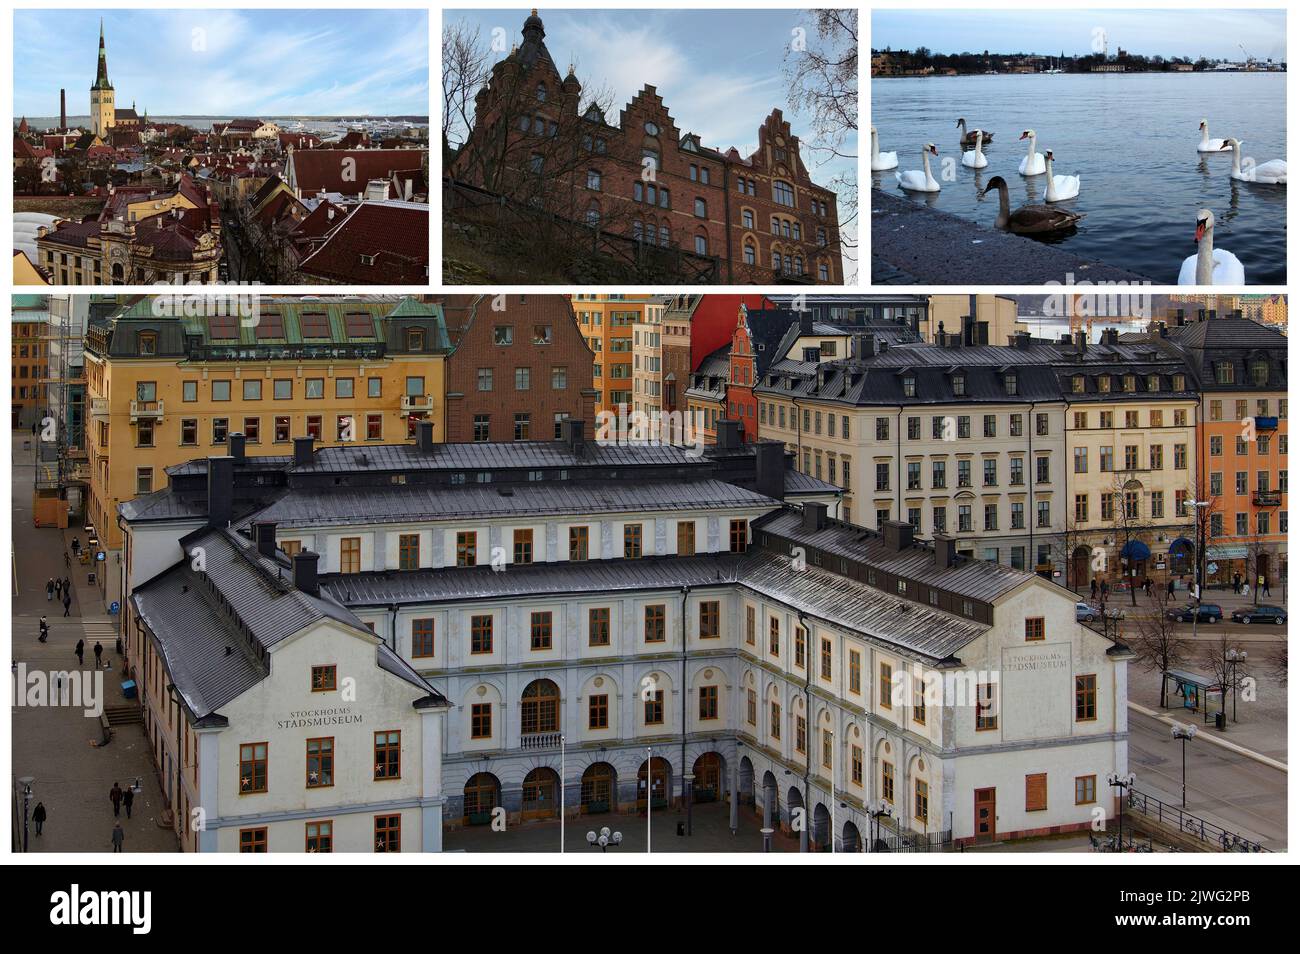 Construida sobre 14 islas y 57 puentes, Estocolmo es una de las ciudades más hermosas de Escandinavia, llena de tesoros históricos y arquitectónicos (2) Foto de stock